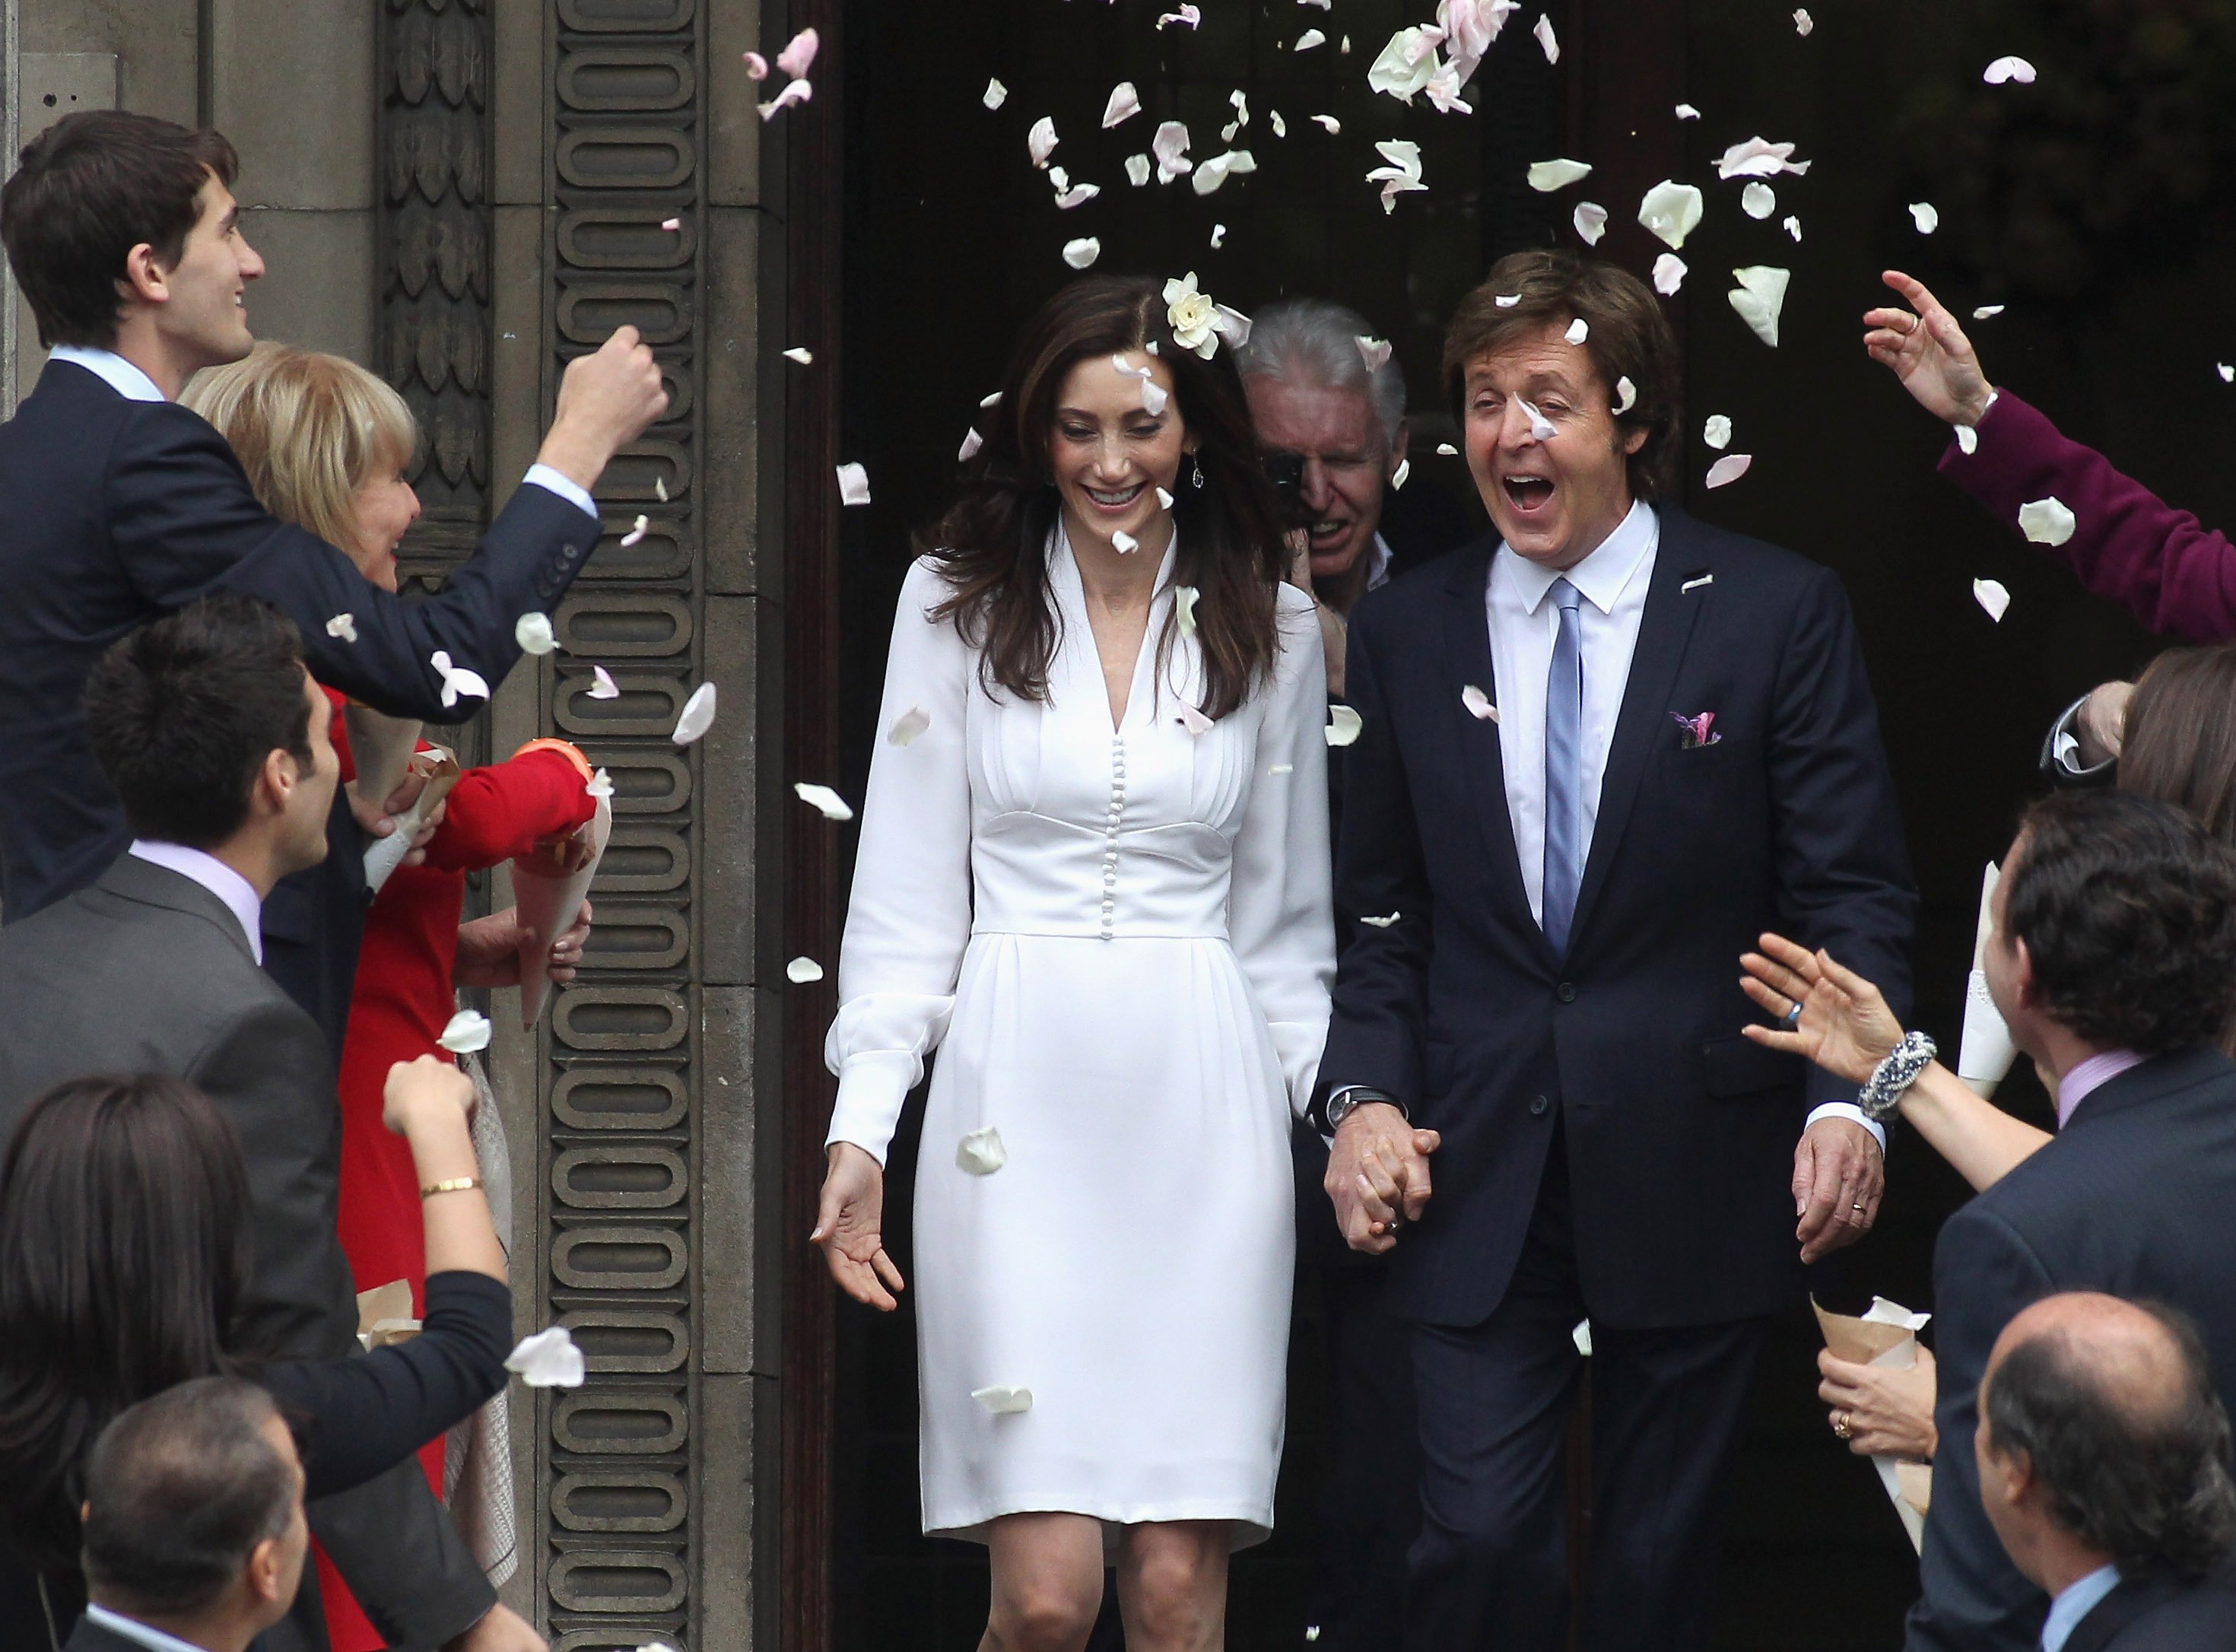 Sir Paul McCartney et Nancy Shevell après leur mariage au Marylebone Registry Office le 9 octobre 2011 à Londres, Angleterre. | Source : Getty Images